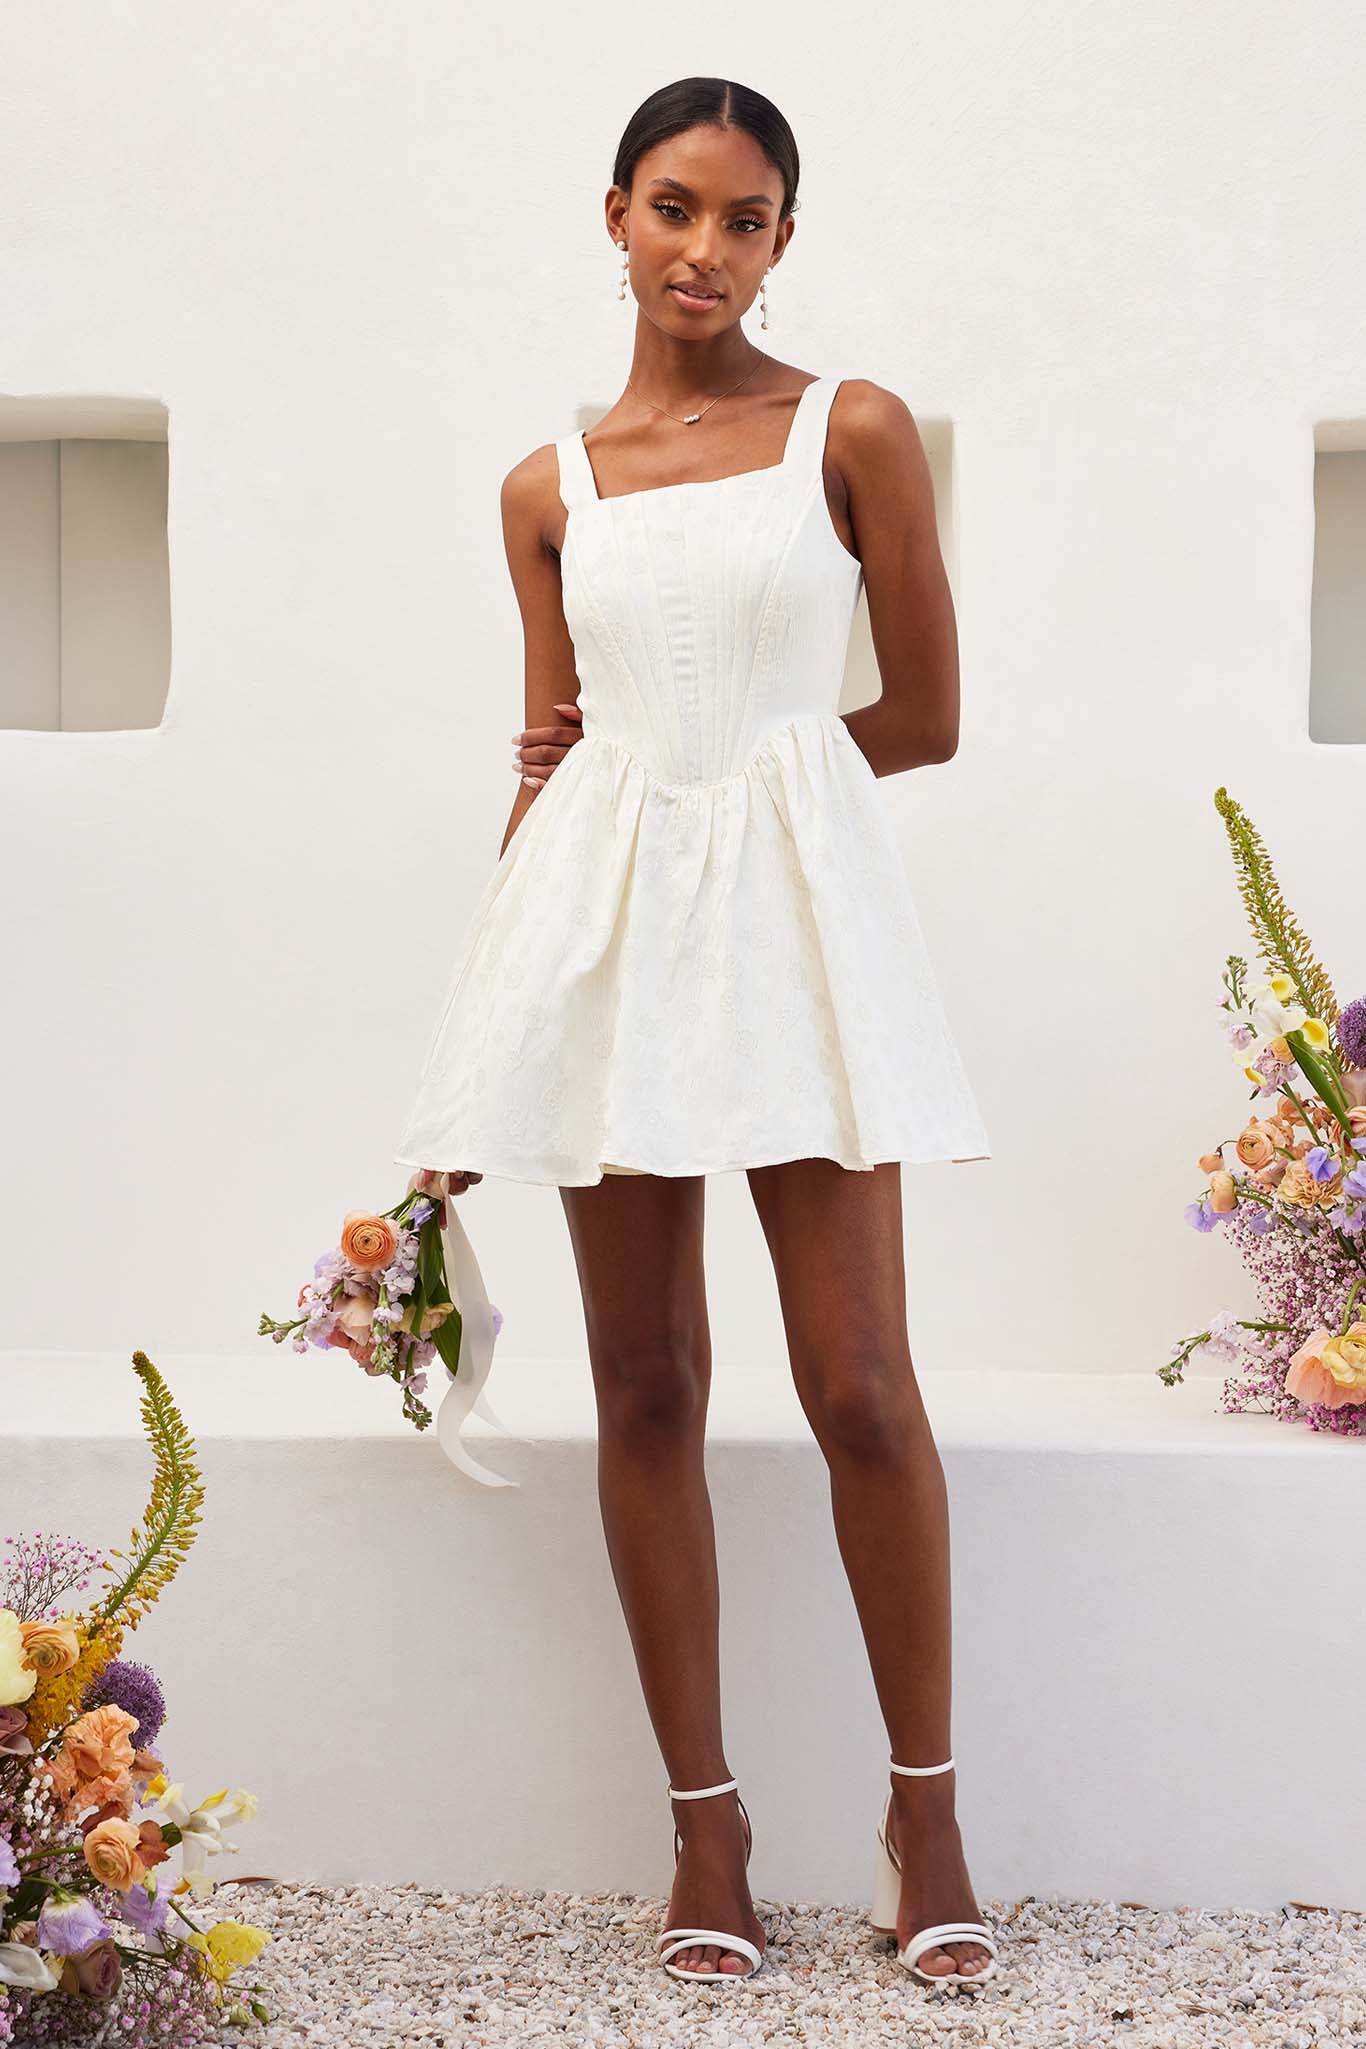 white corset dress